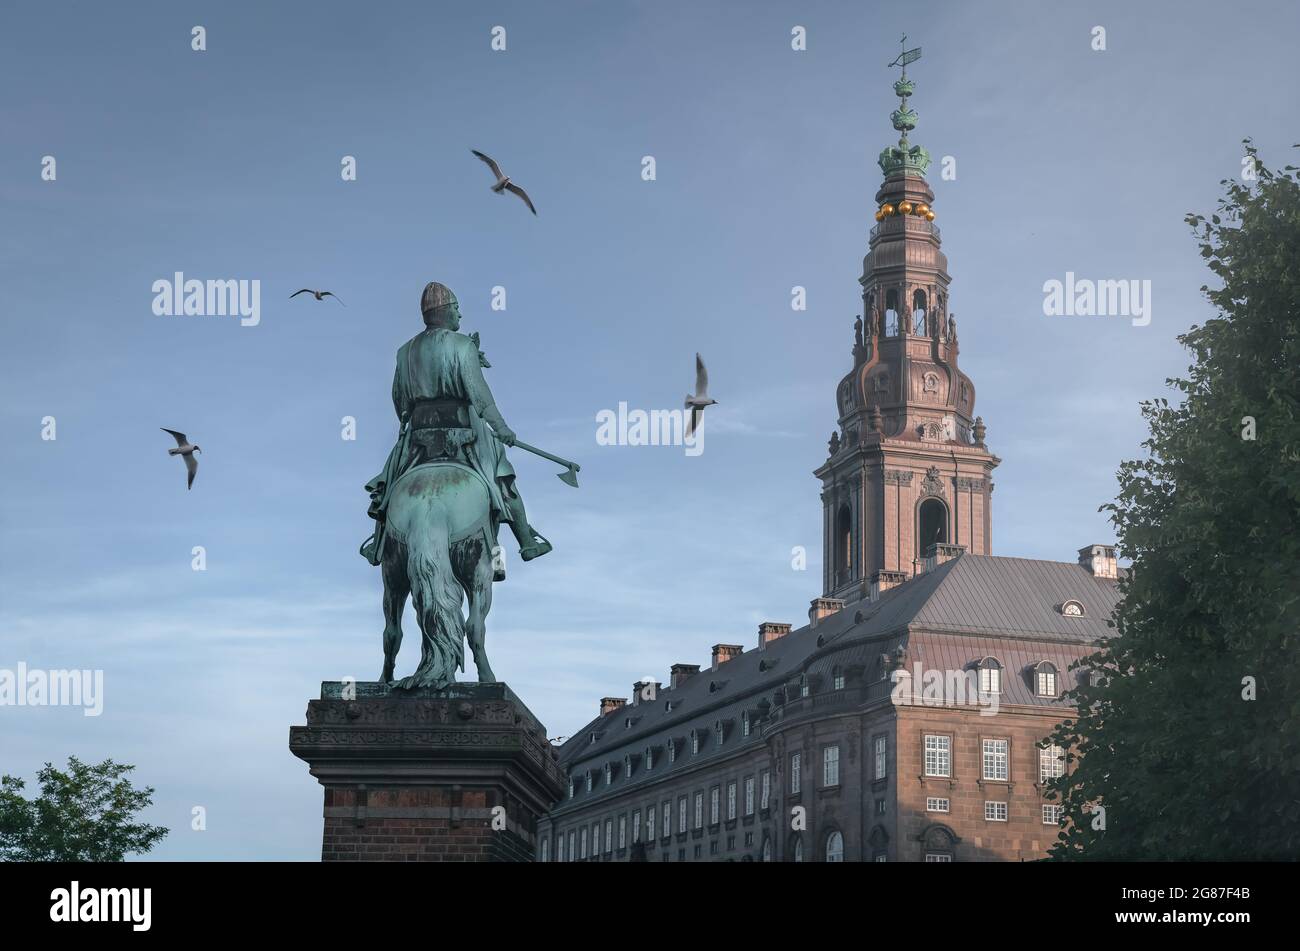 Estatua de Absalon en la plaza de Hojbro con el Palacio Christiansborg al fondo - Copenhague, Dinamarca Foto de stock